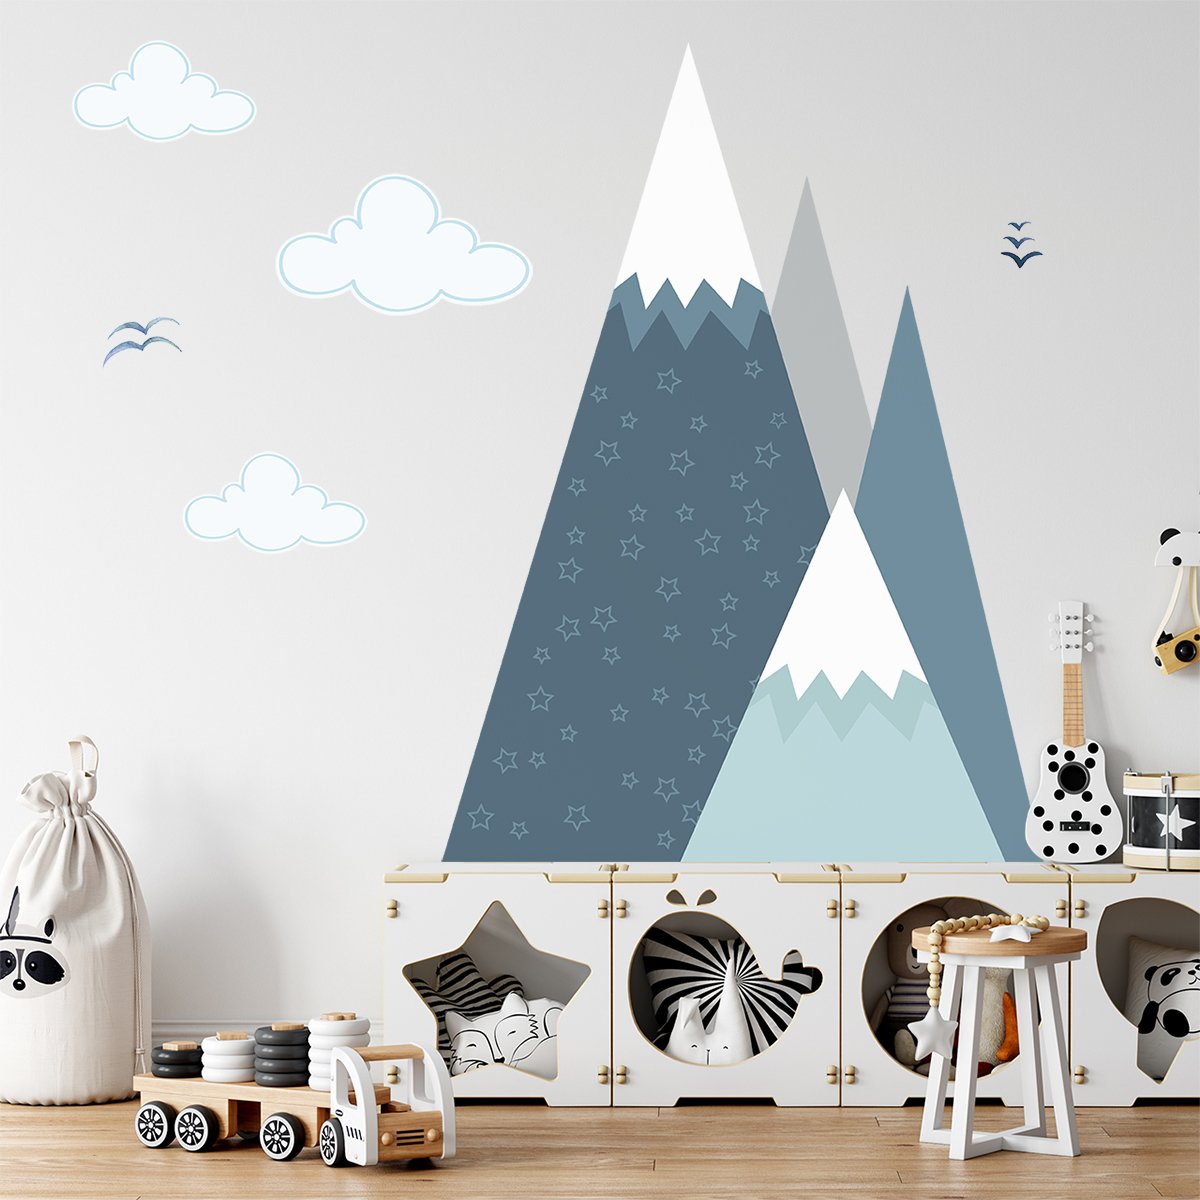 Naklejki na ścianę dla dziecka skandynawskie góry#kolor_niebieski